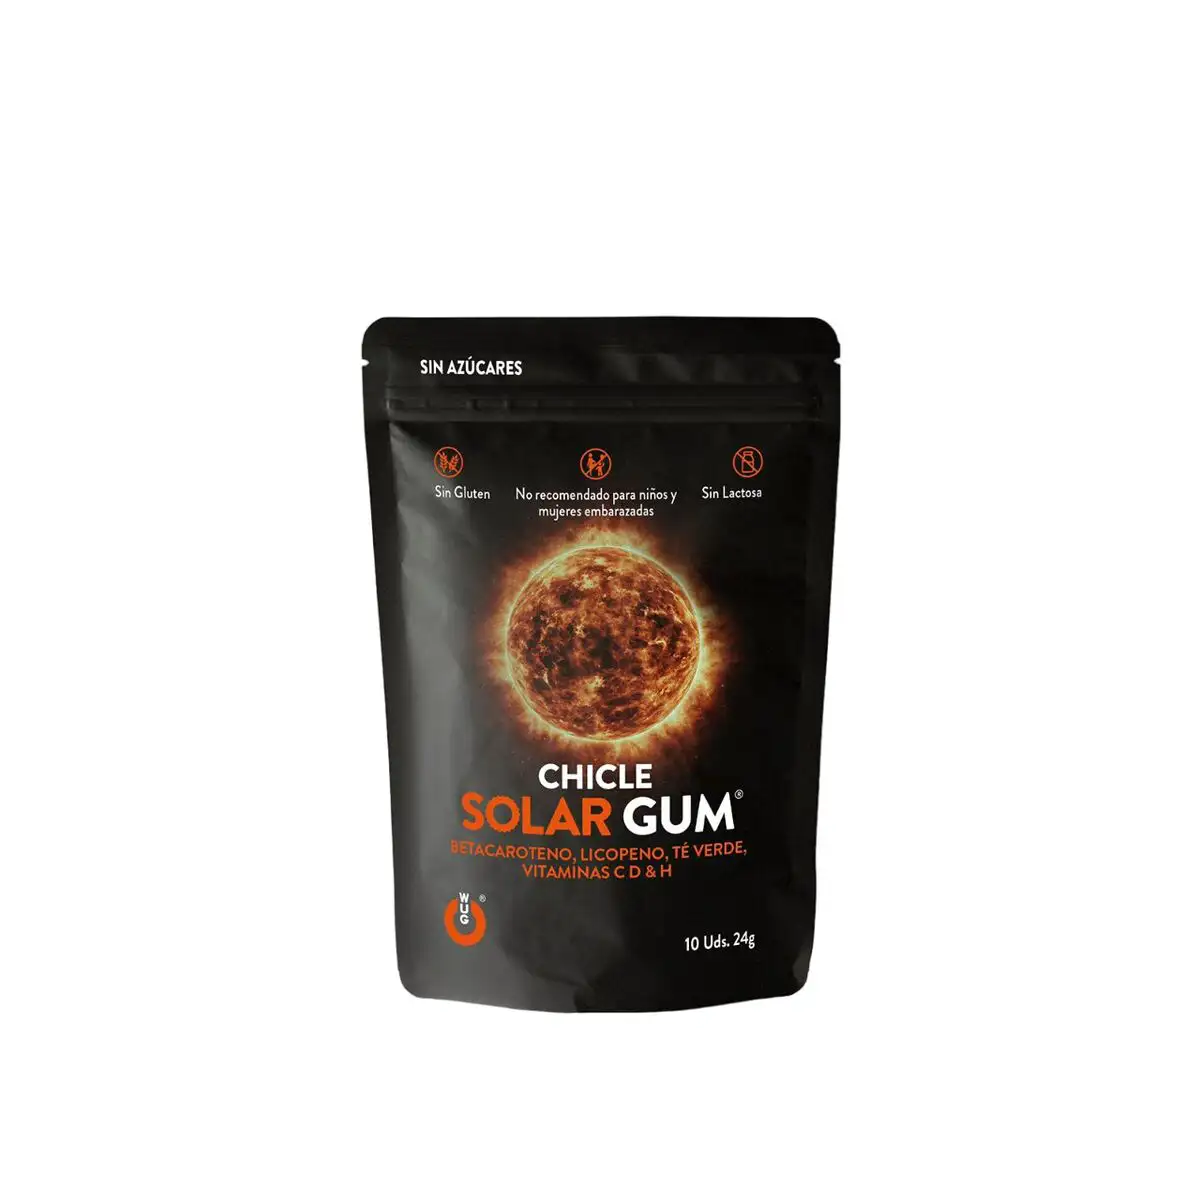 Chewing gum wug solar gum 24 g_8562. DIAYTAR SENEGAL - Là où Chaque Achat a du Sens. Explorez notre gamme et choisissez des produits qui racontent une histoire, du traditionnel au contemporain.